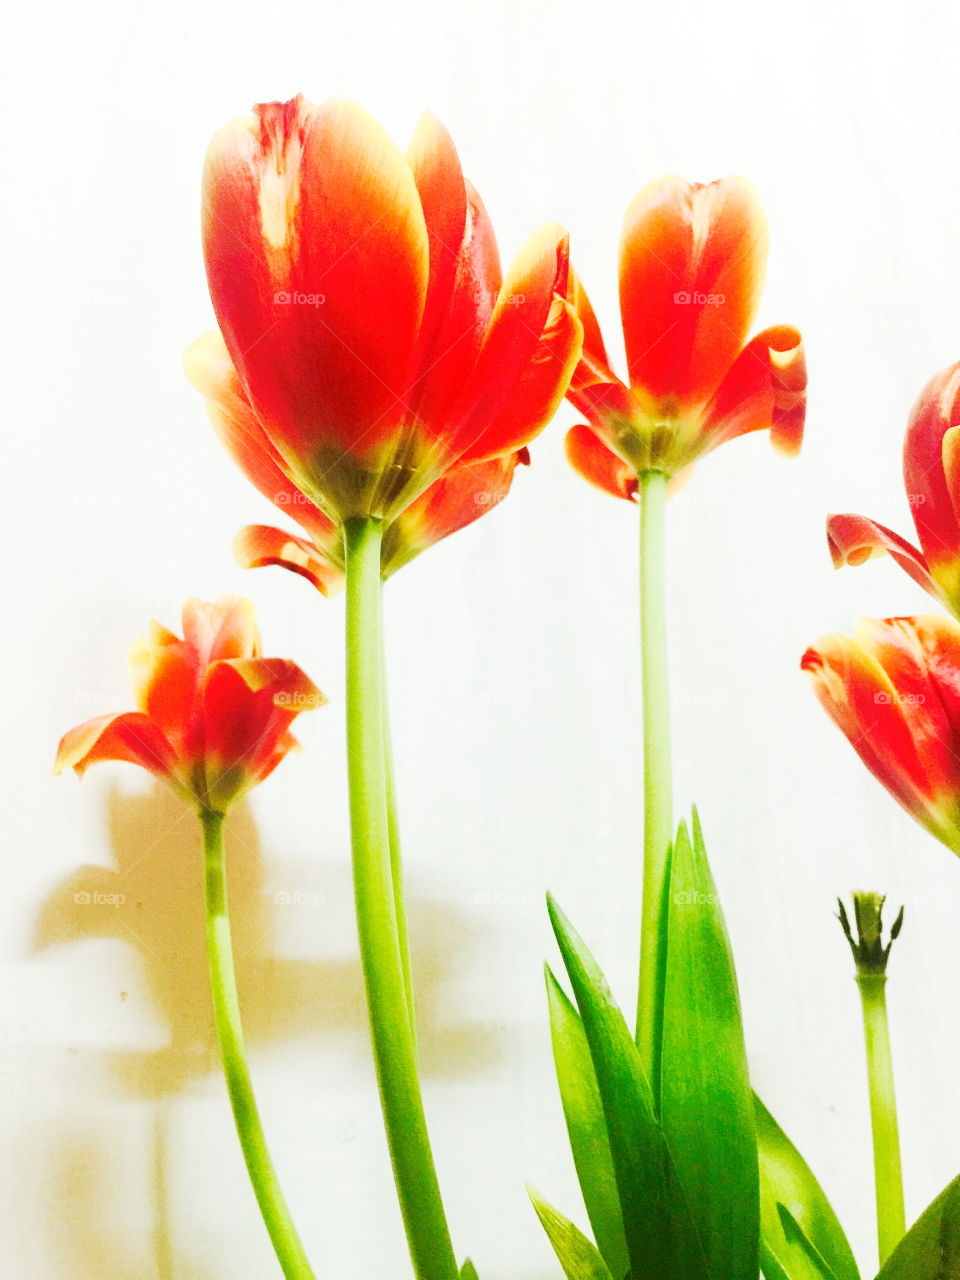 The tulip close up 